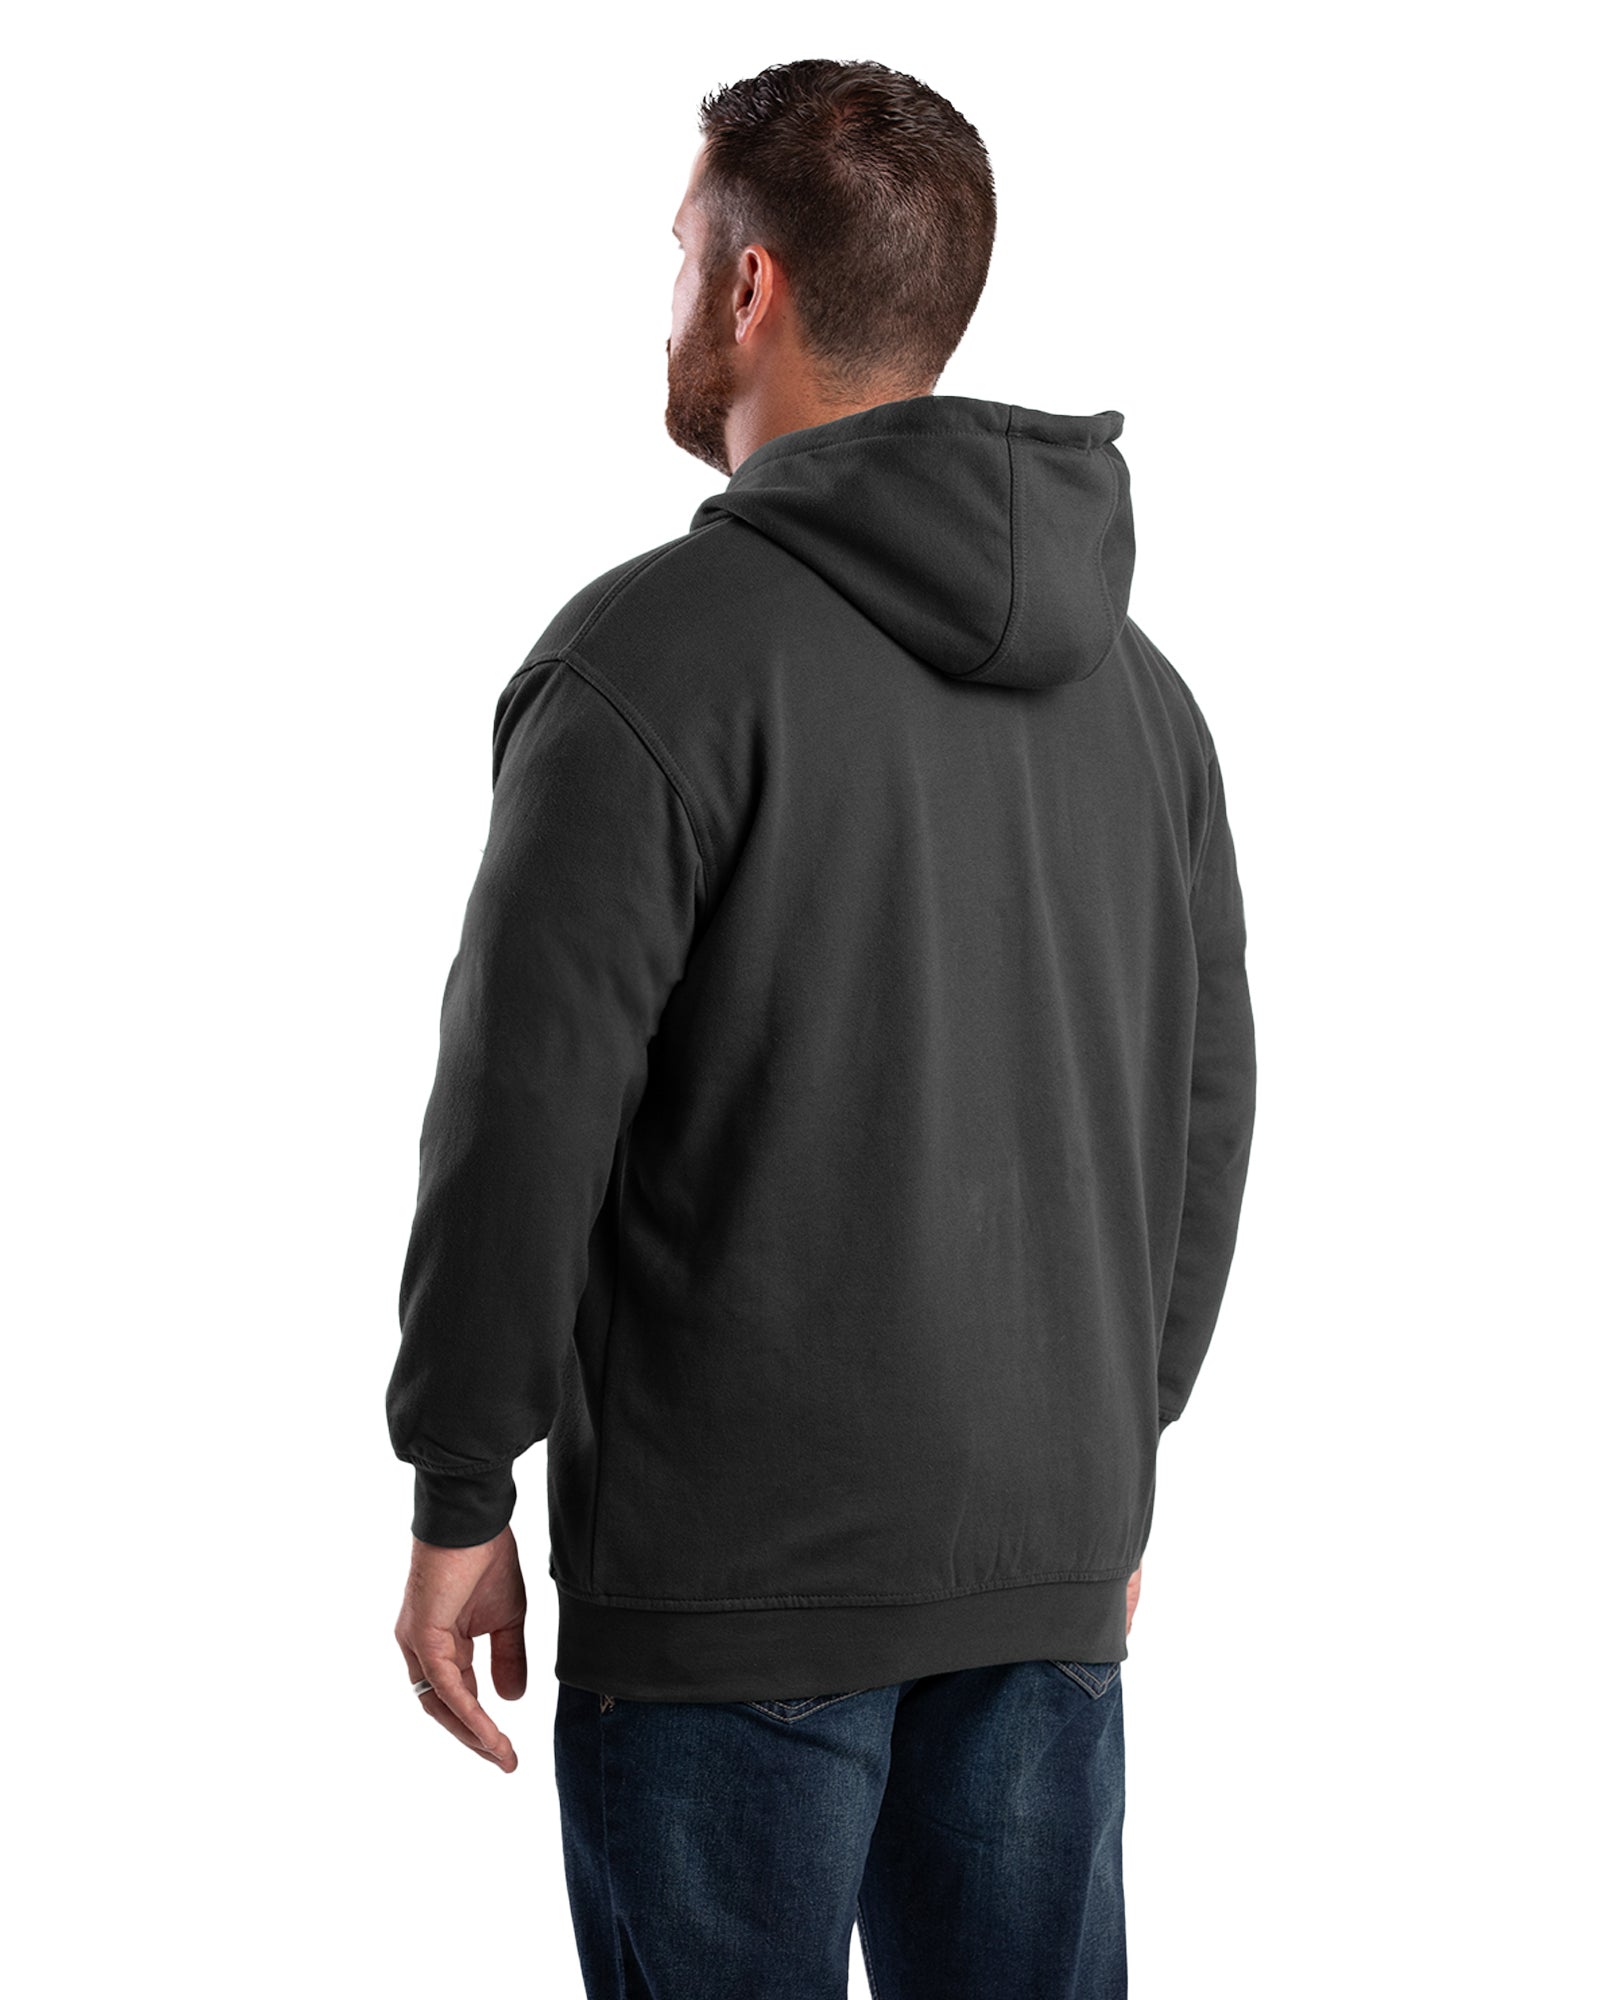 Schmidt Workwear Thermal Lined Hoodie Full Zip Sweatshirt Mens 3XL